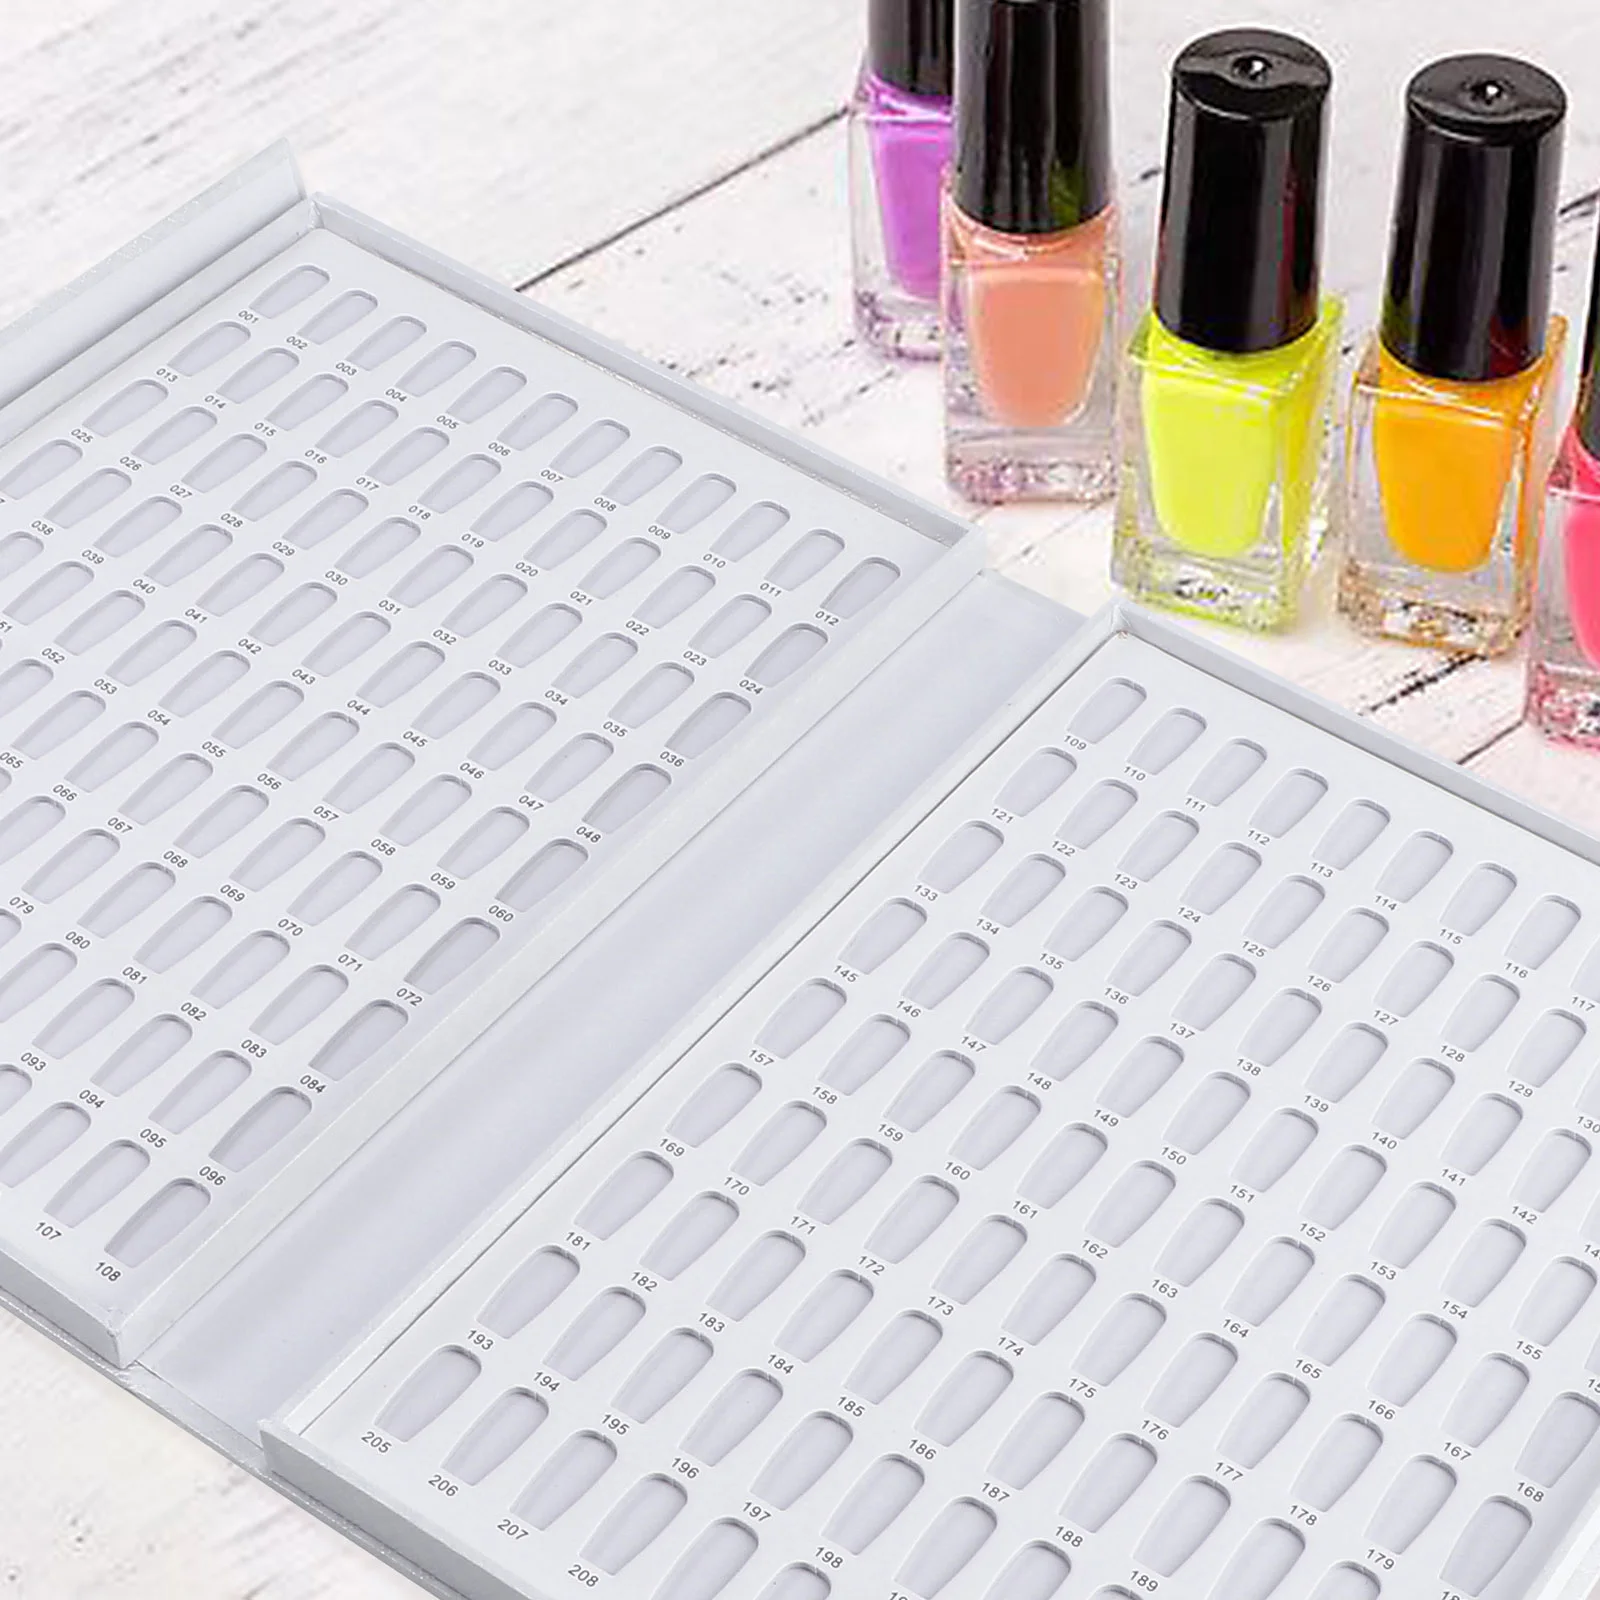 

Профессиональный Гель-лак для ногтей 216 цветов, демонстрационный график лака для ногтей, цветная доска, набор для маникюрного салона (белый)